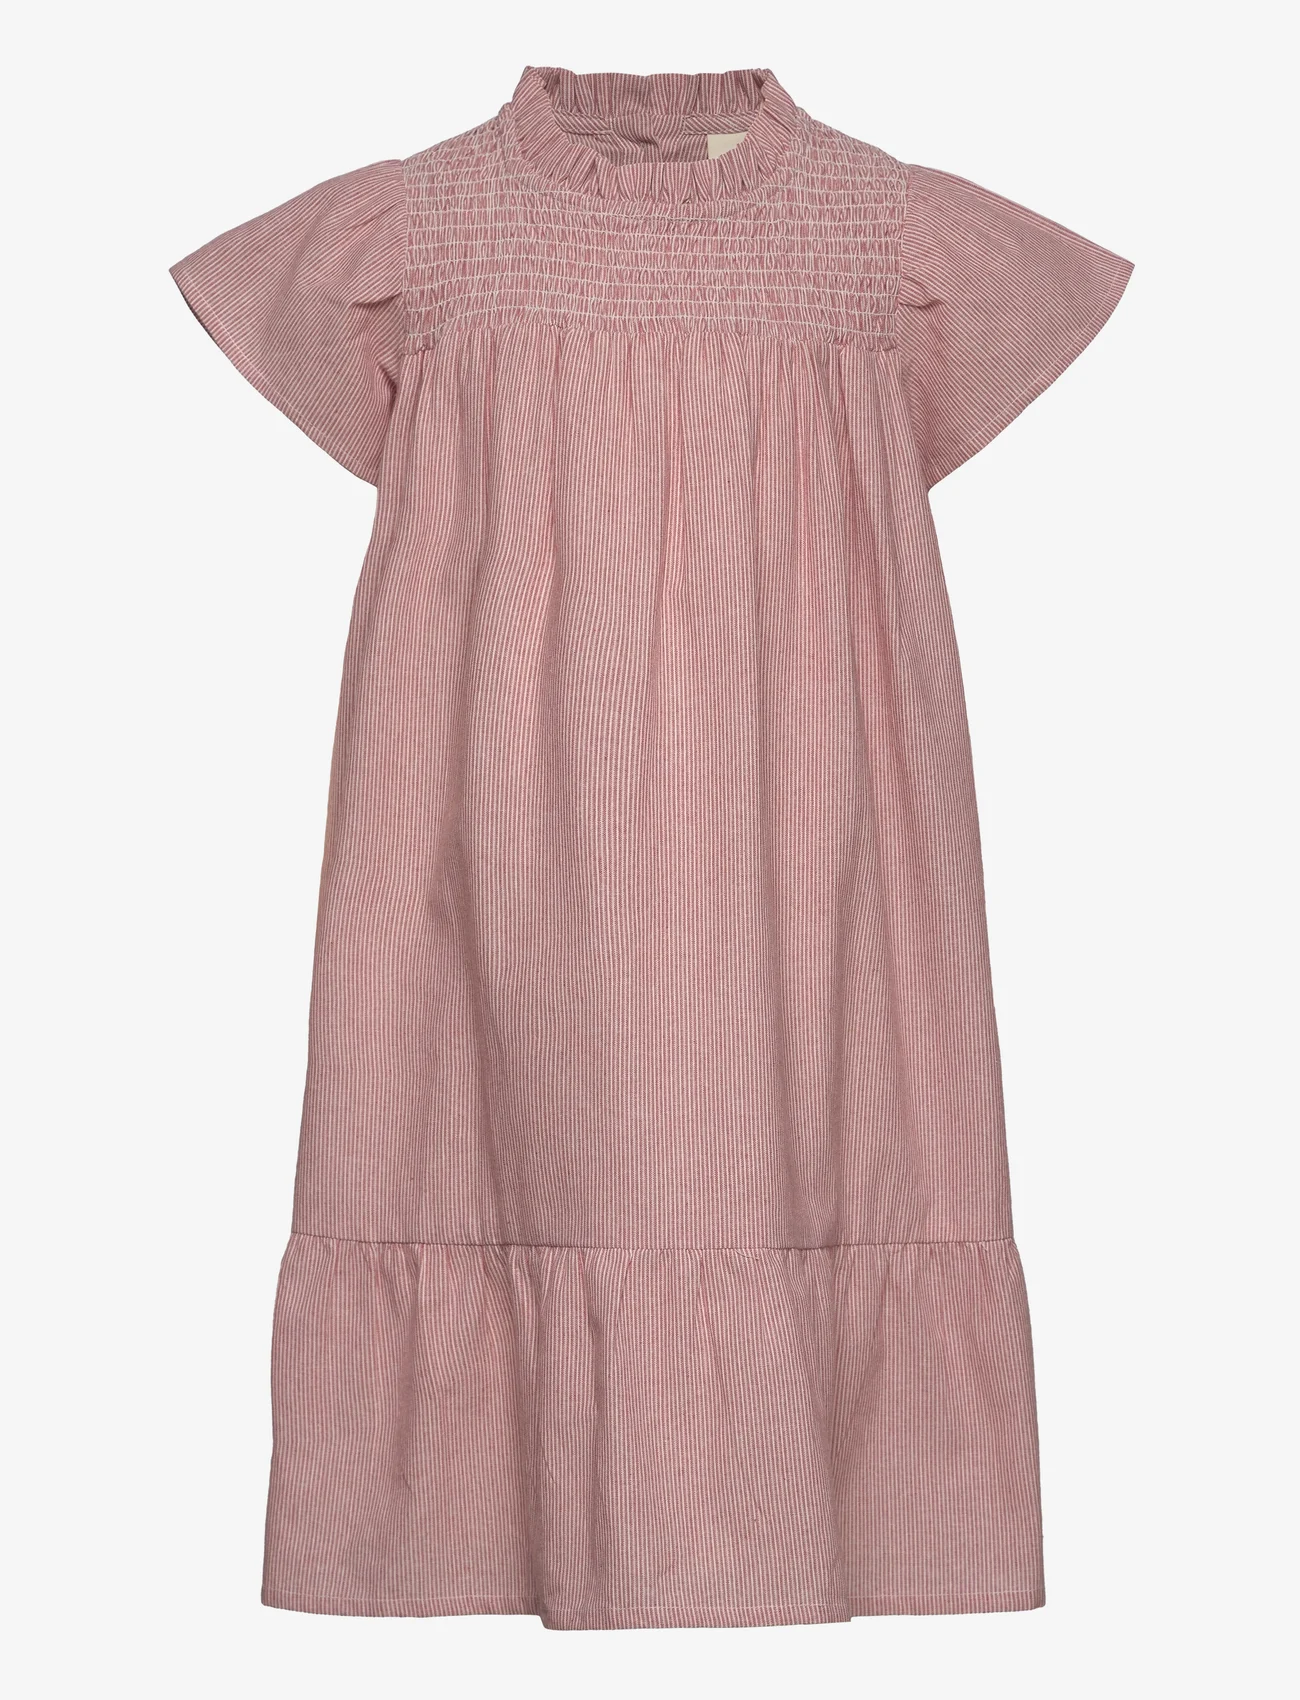 En Fant - Dress YD Stripe - short-sleeved casual dresses - old rose - 0